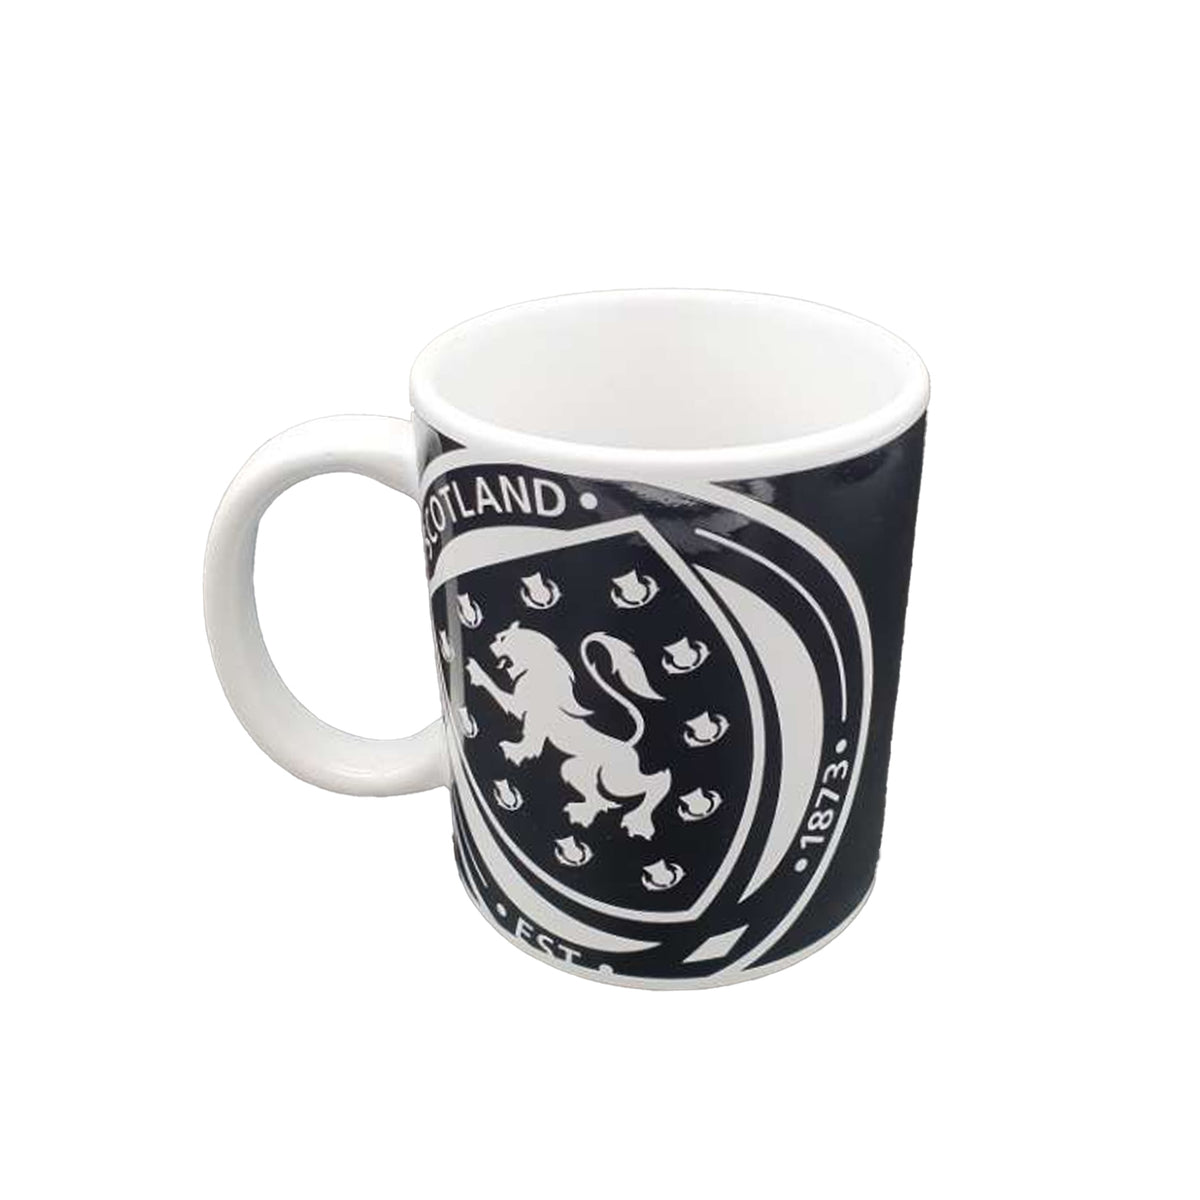 Scotland FA Large Logo Monochrome Mug